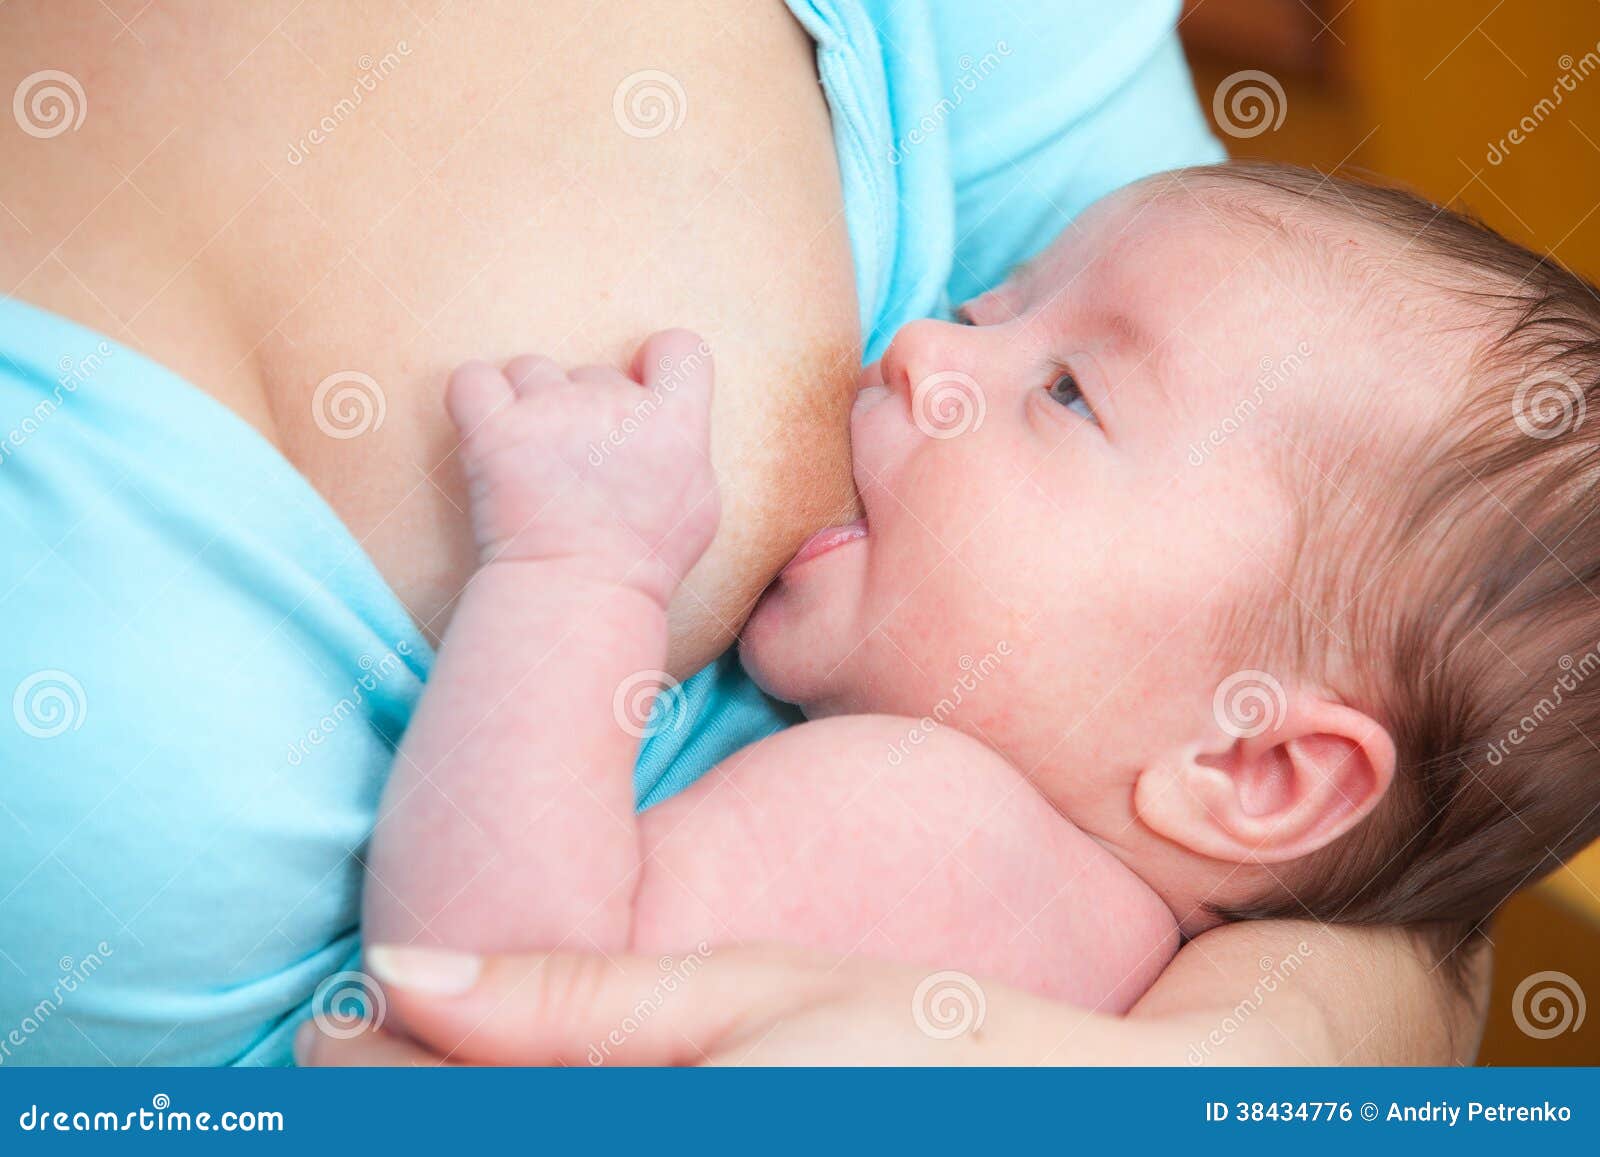 грудь при беременности цвет сосков фото 58